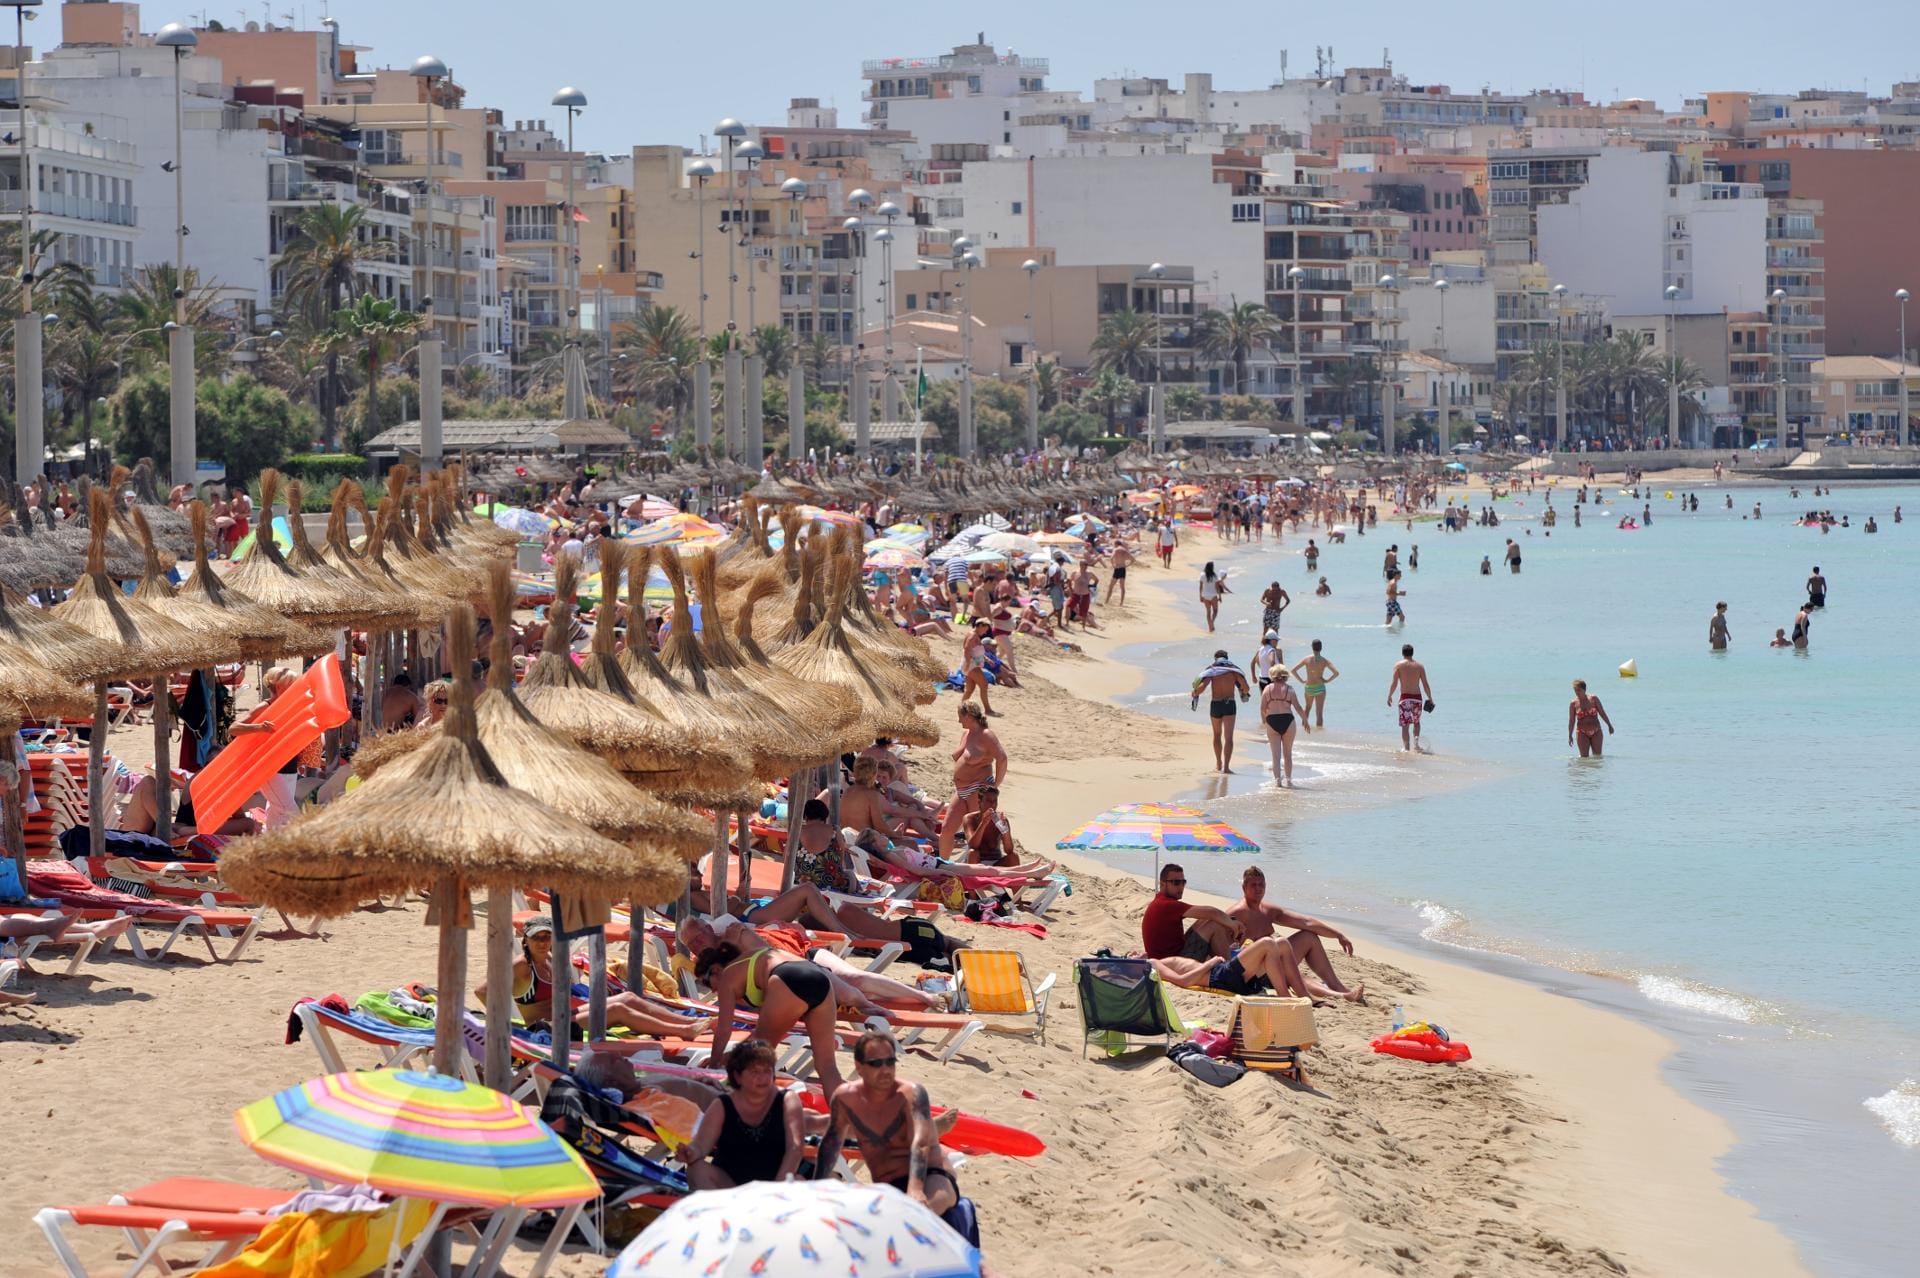 Hochbetrieb am Strand von Arenal, das teilweise zu Palma gehört - so sieht für viele das typische Bild von Mallorca aus.